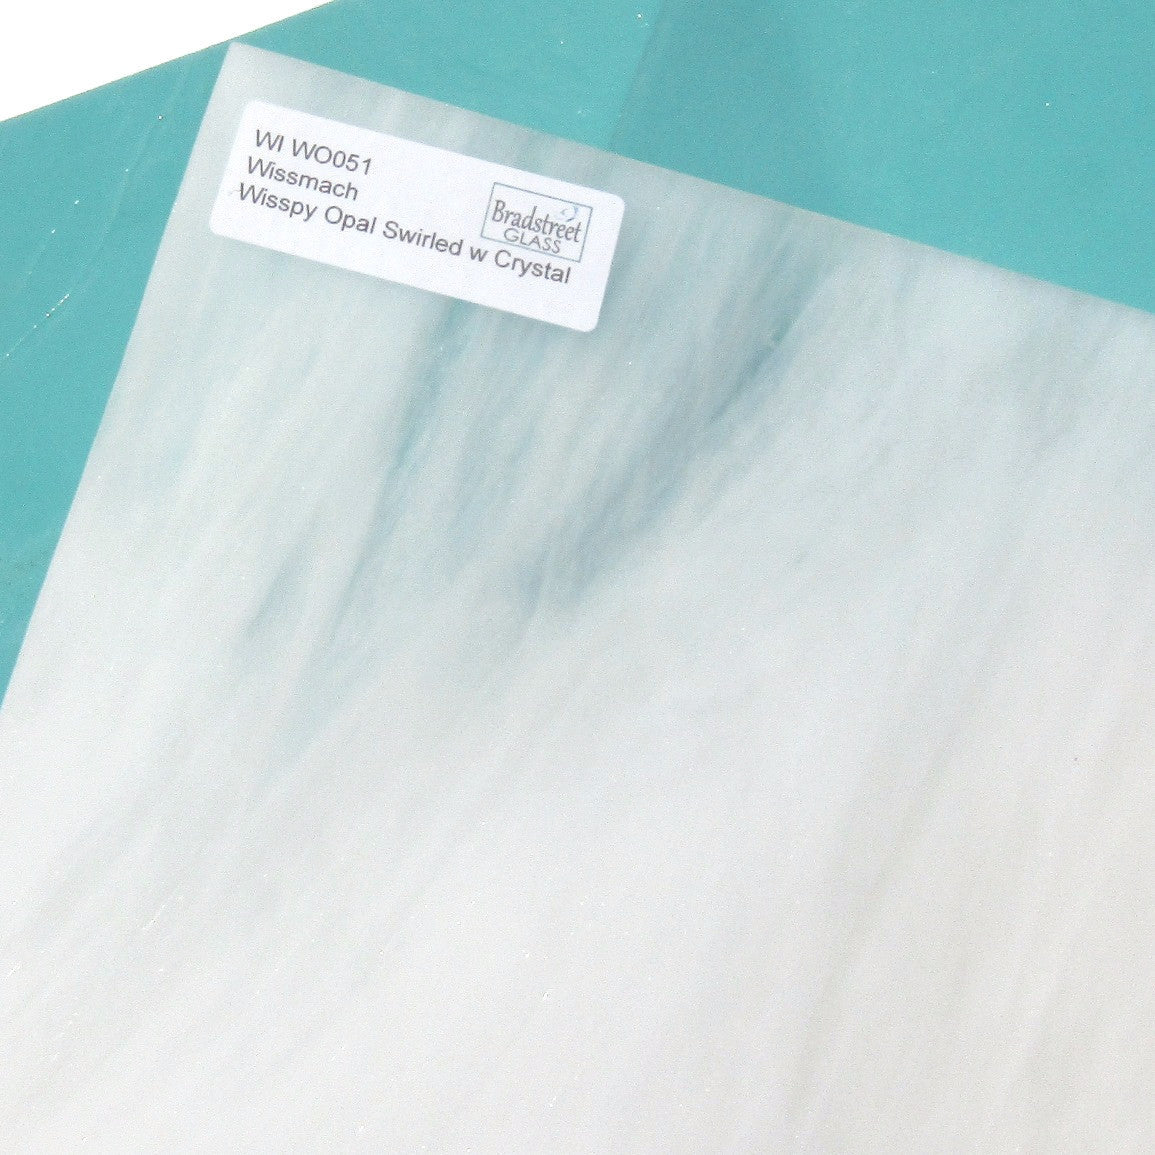 Wissmach Wisspy Opal Swirled with Crystal 8x8 Stained Glass Sheet WI WO051 